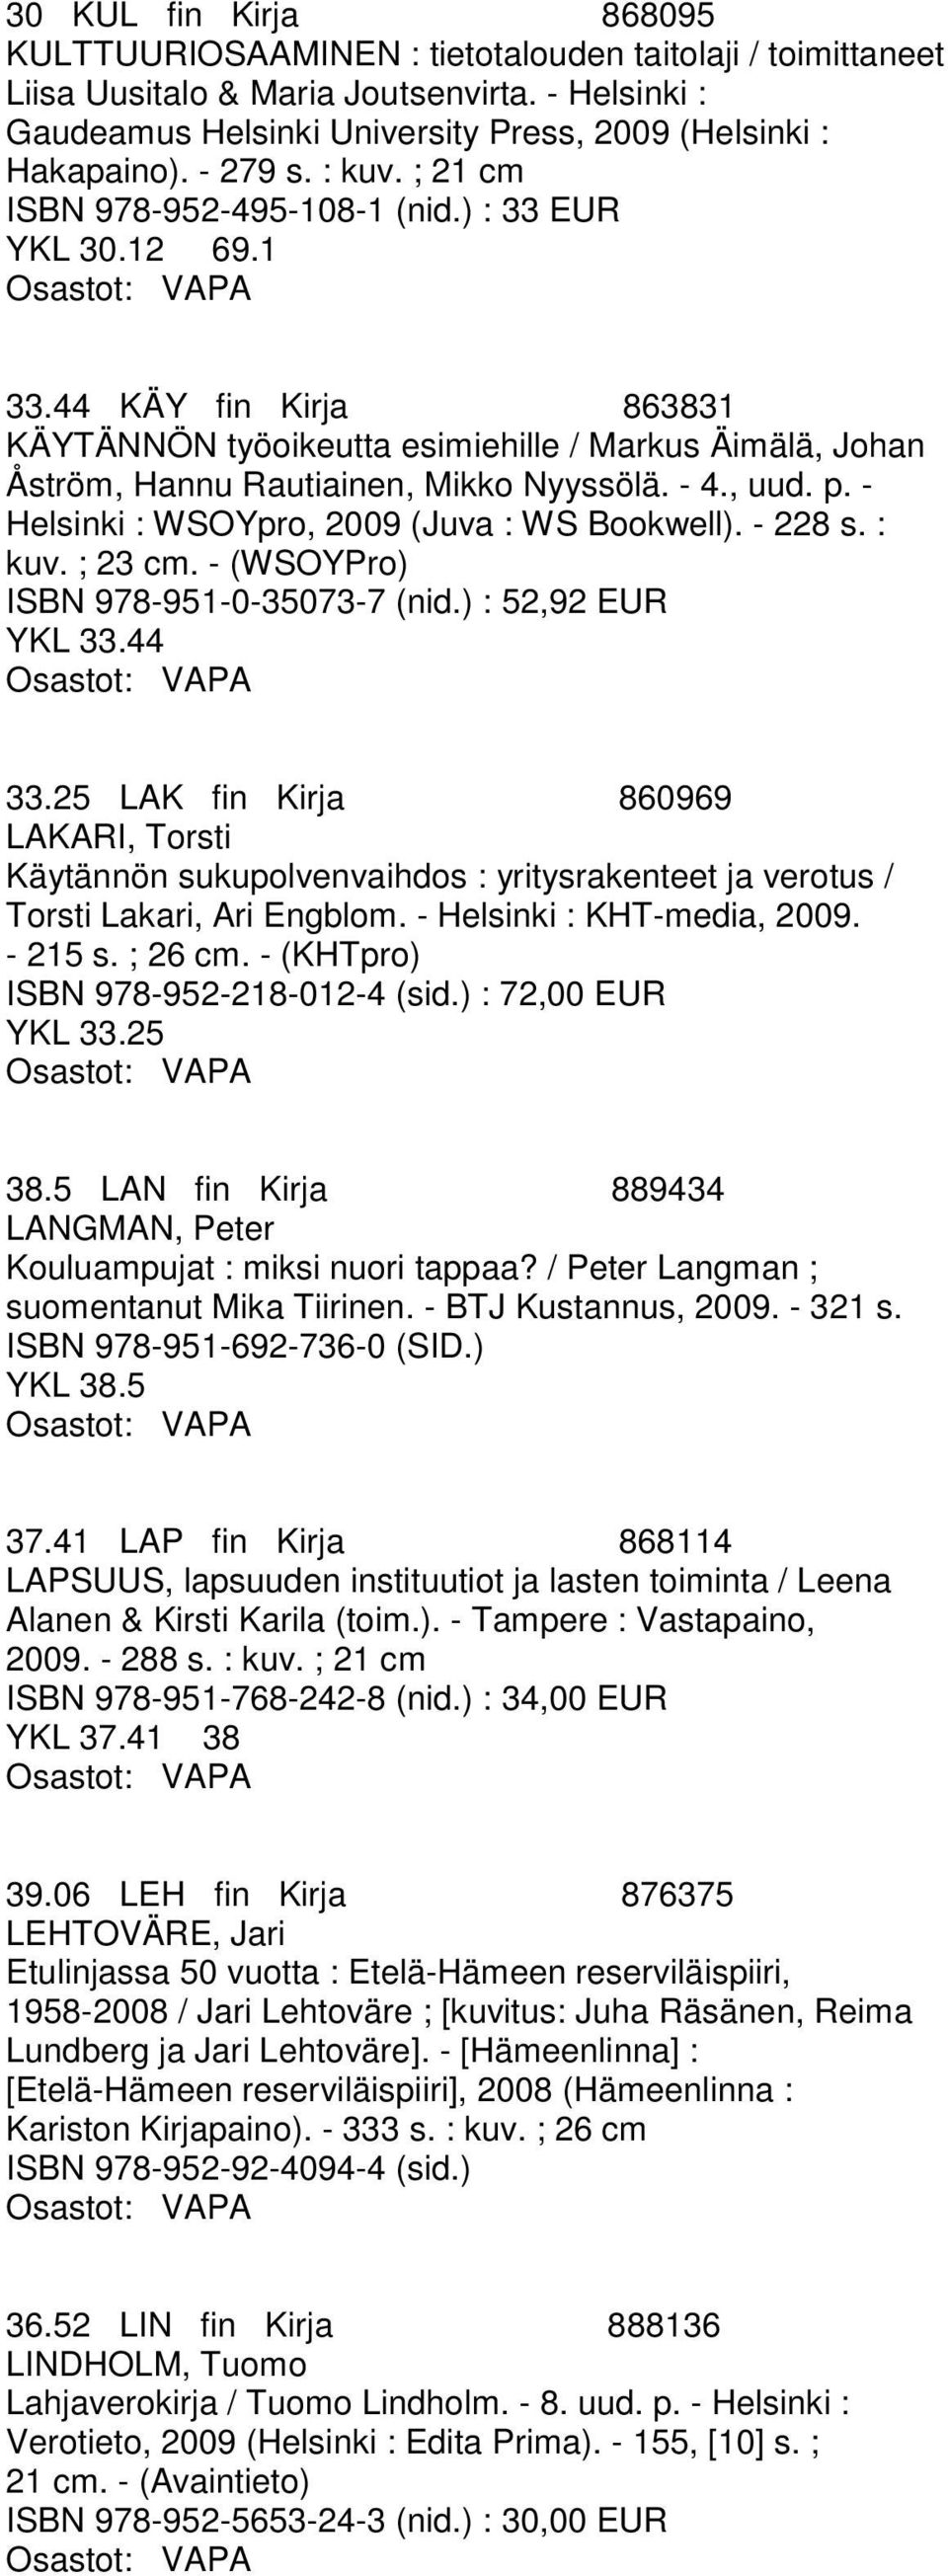 44 KÄY fin Kirja 863831 KÄYTÄNNÖN työoikeutta esimiehille / Markus Äimälä, Johan Åström, Hannu Rautiainen, Mikko Nyyssölä. - 4., uud. p. - Helsinki : WSOYpro, 2009 (Juva : WS Bookwell). - 228 s.